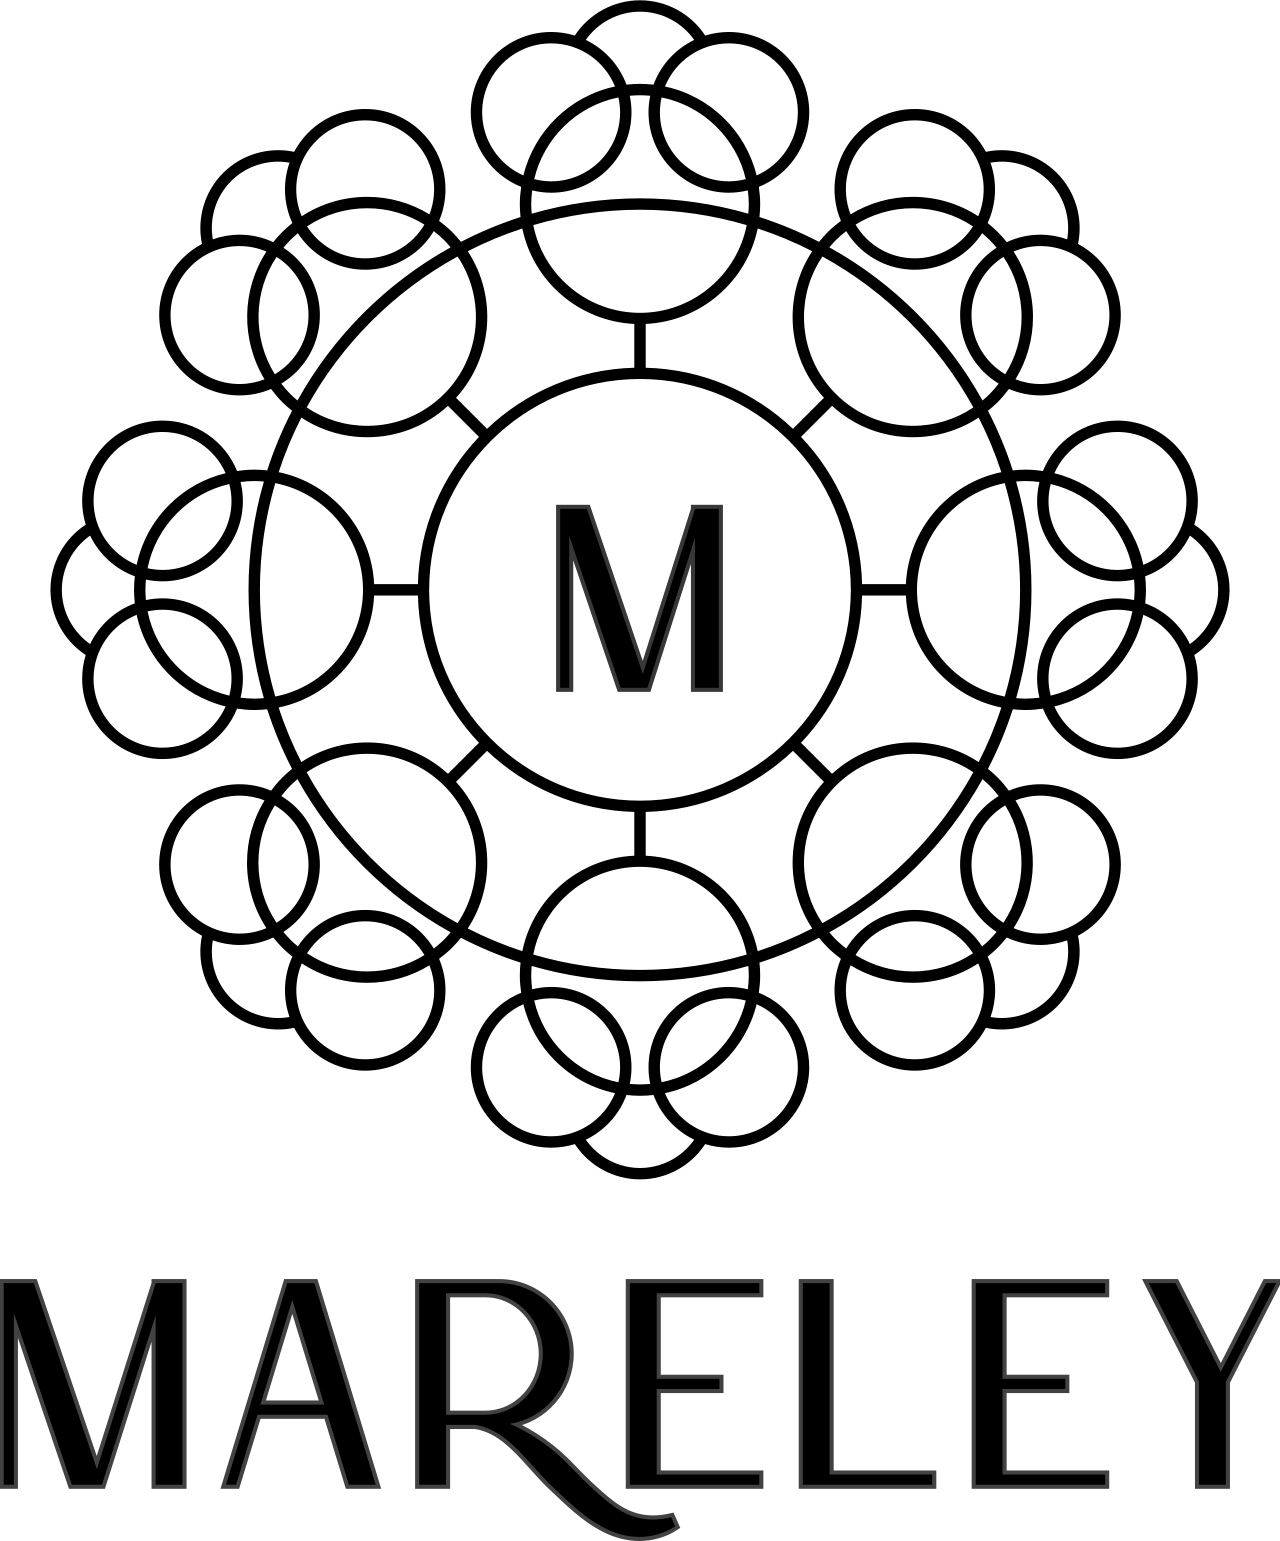 MARELEY's web page